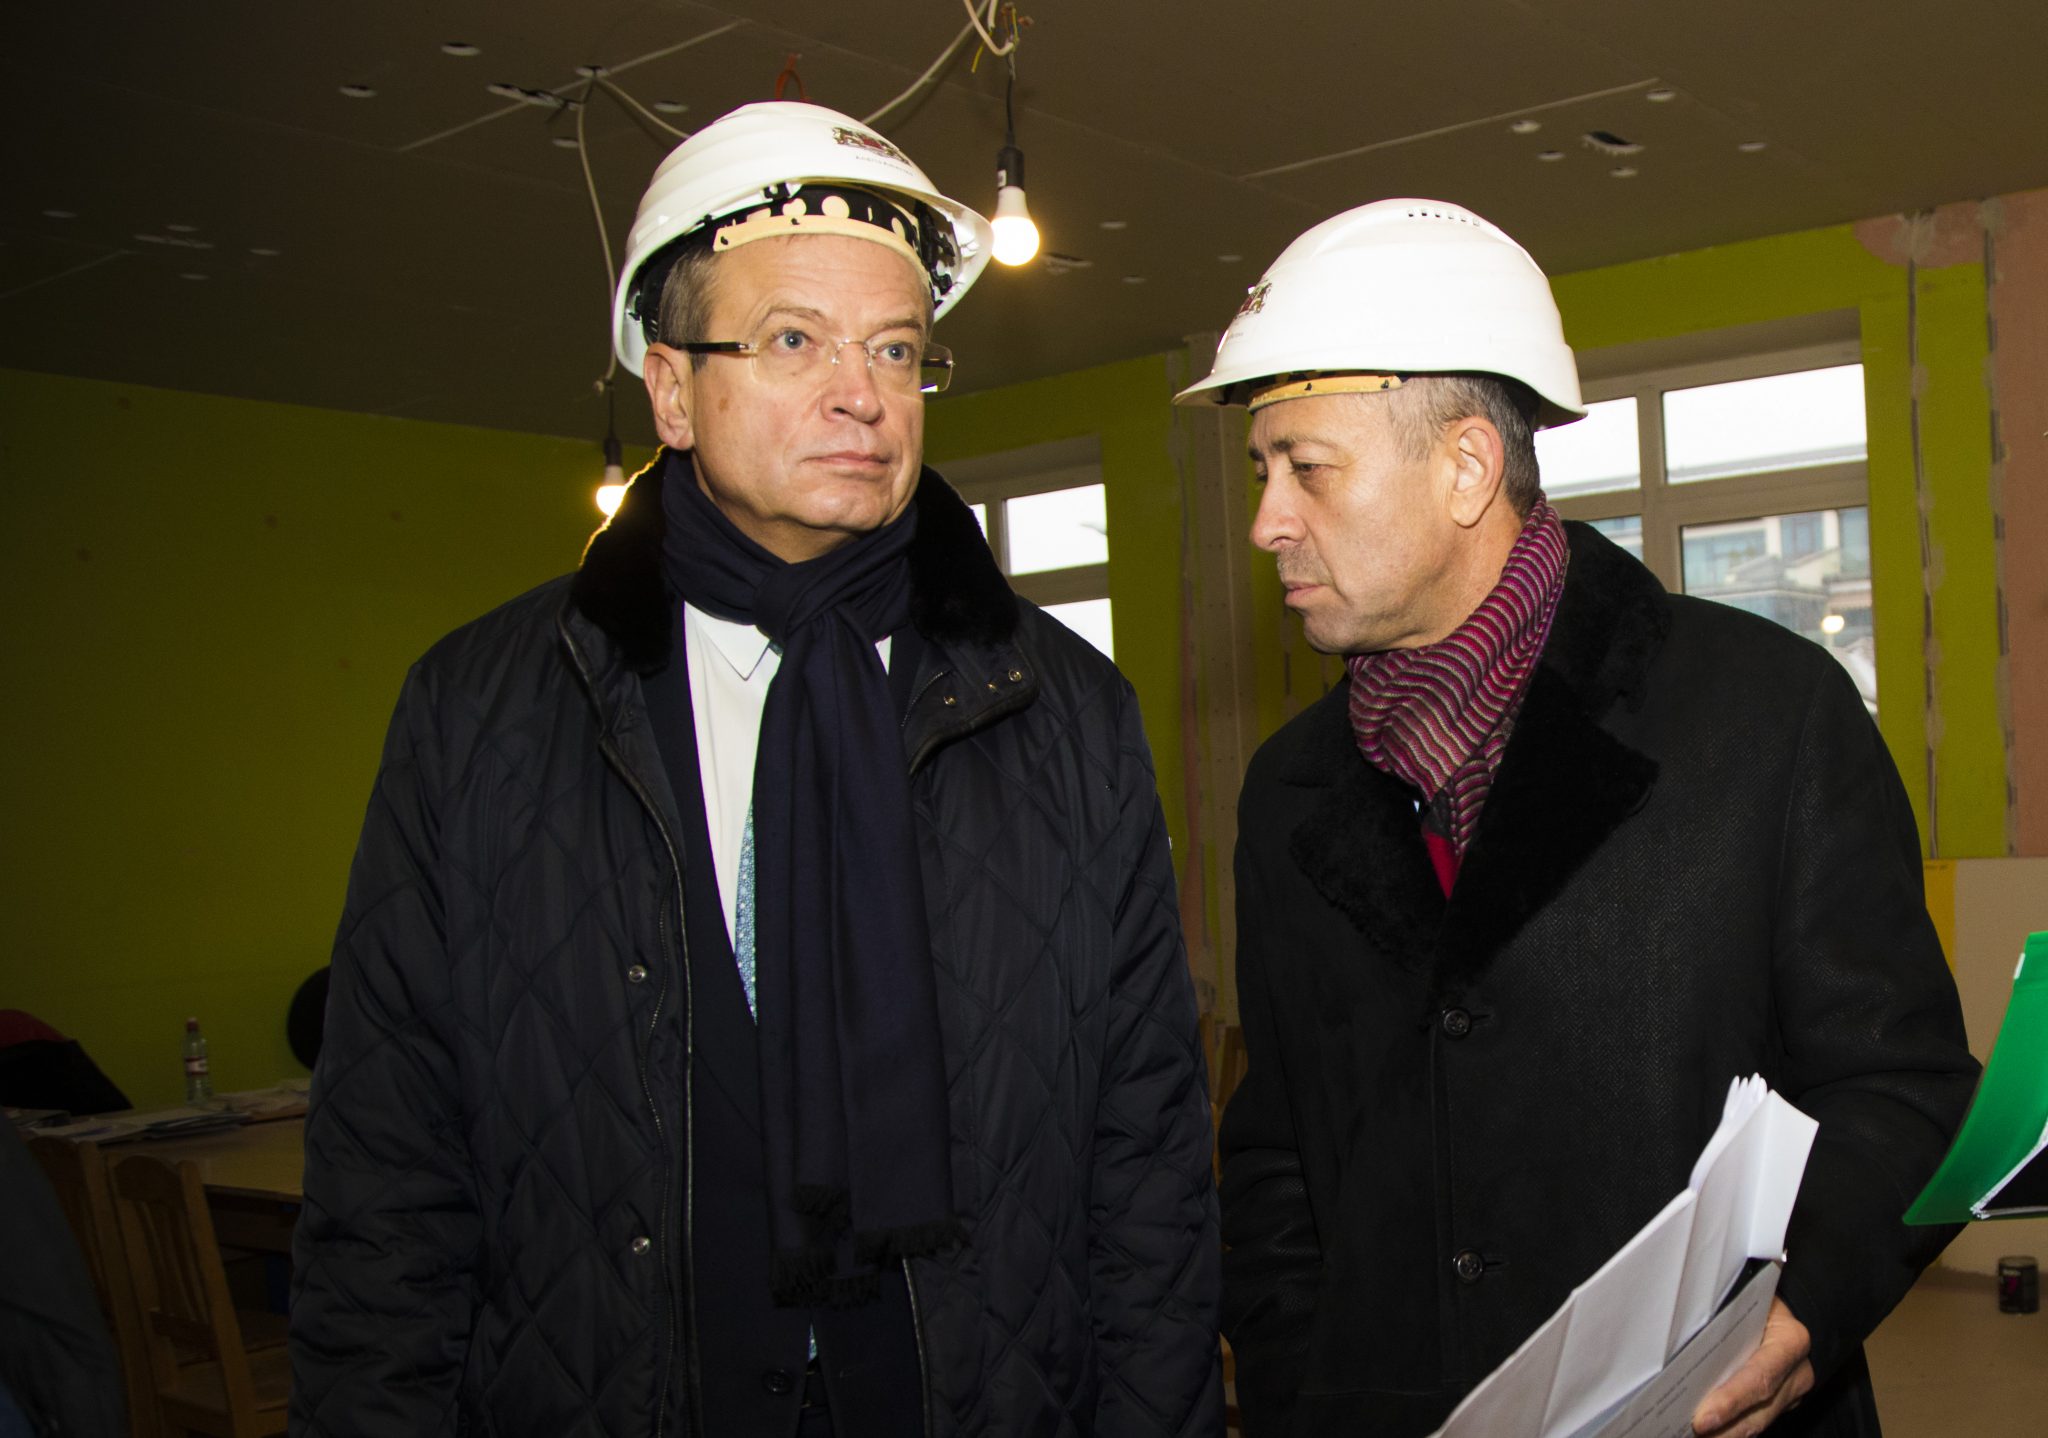 Nākamgad Rīgas Bāriņtiesa un krīzes un konsultācijas centrs “Skalbes” atradīsies jaunā ēkā Tērbatas ielā 69